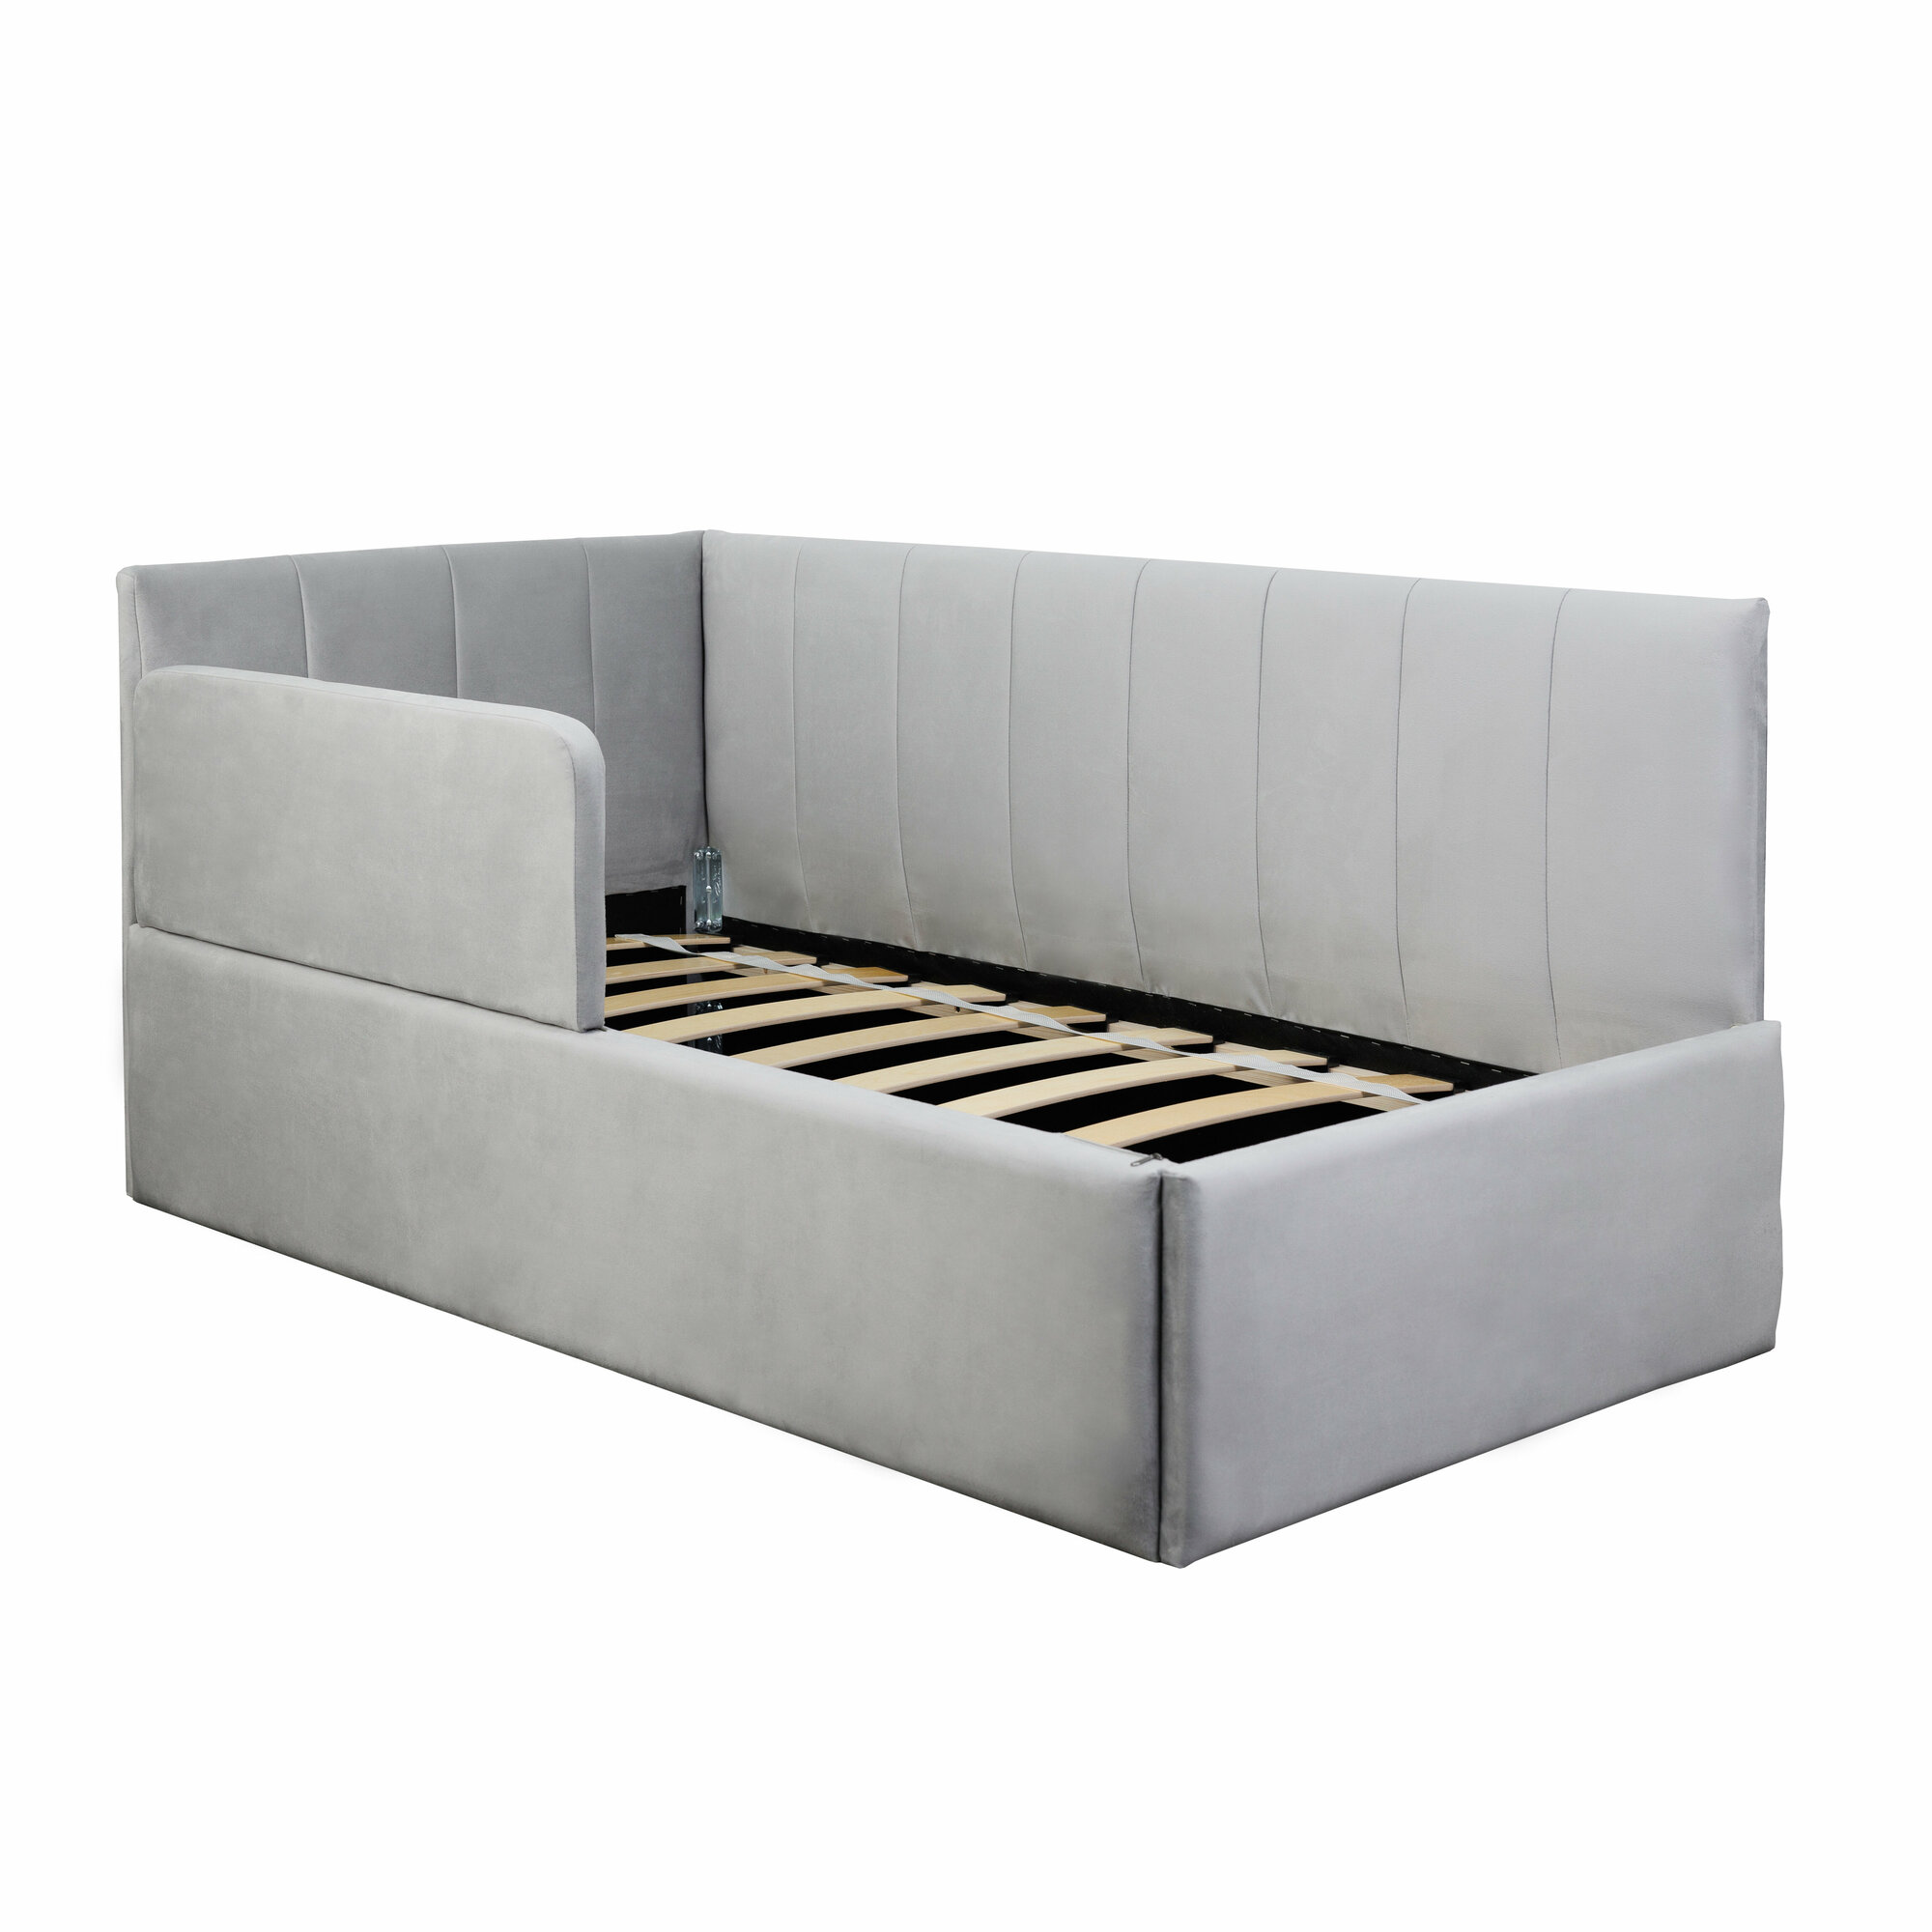 Кровать-диван Хагги 160*80 серая с защитным бортиком, без ящика для хранения